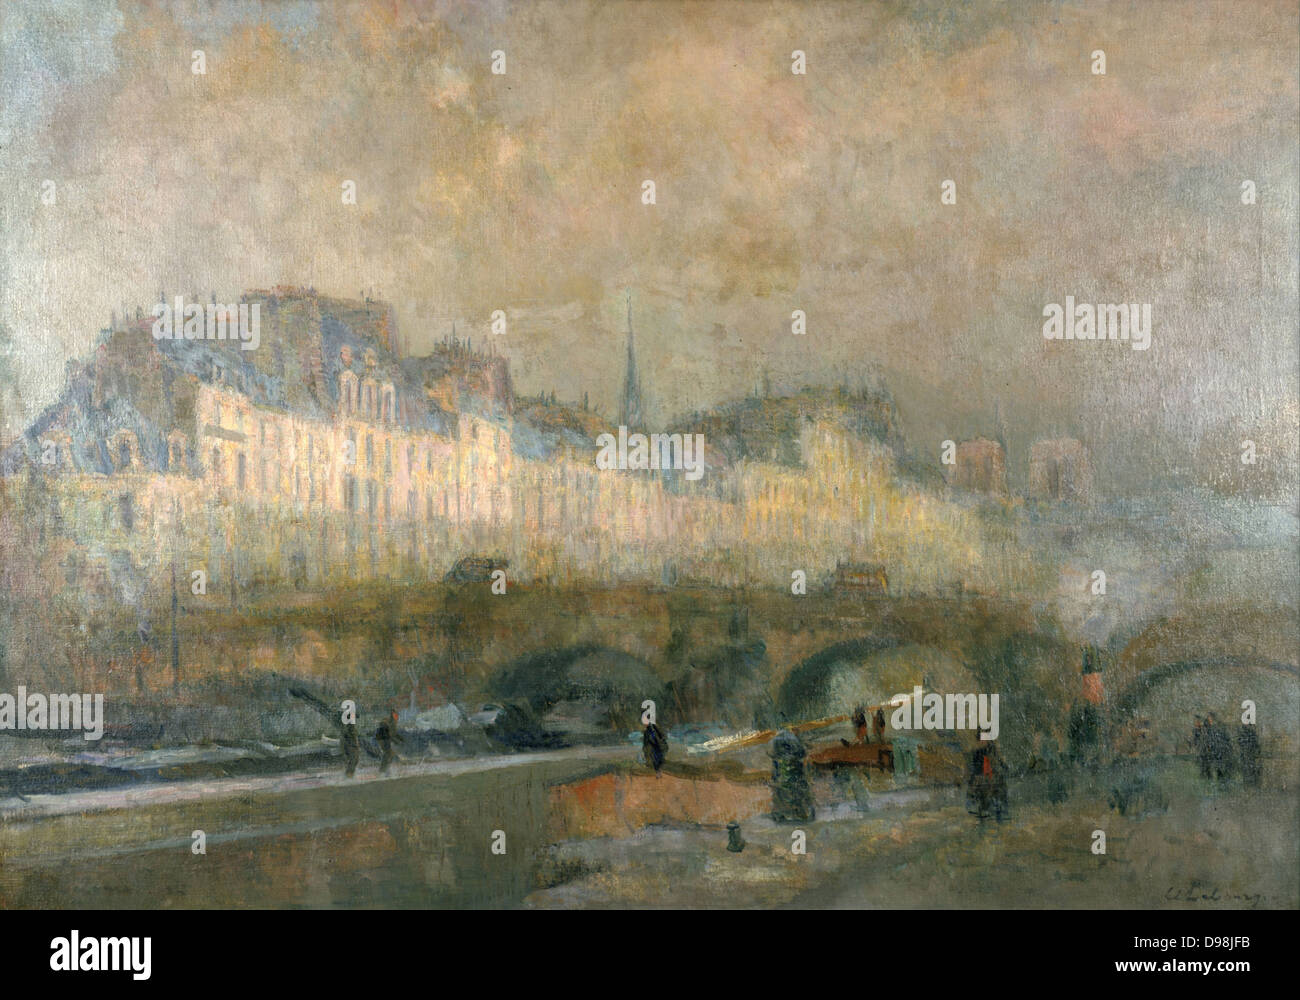 L'Ecluse de la Monnaie im Winter Sunshine', Paris. Charles Albert Lebourg (1849-1828), französischer Landschaftsmaler. Lastkähne auf dem Fluss Seine und gewölbte Brücke. Stockfoto